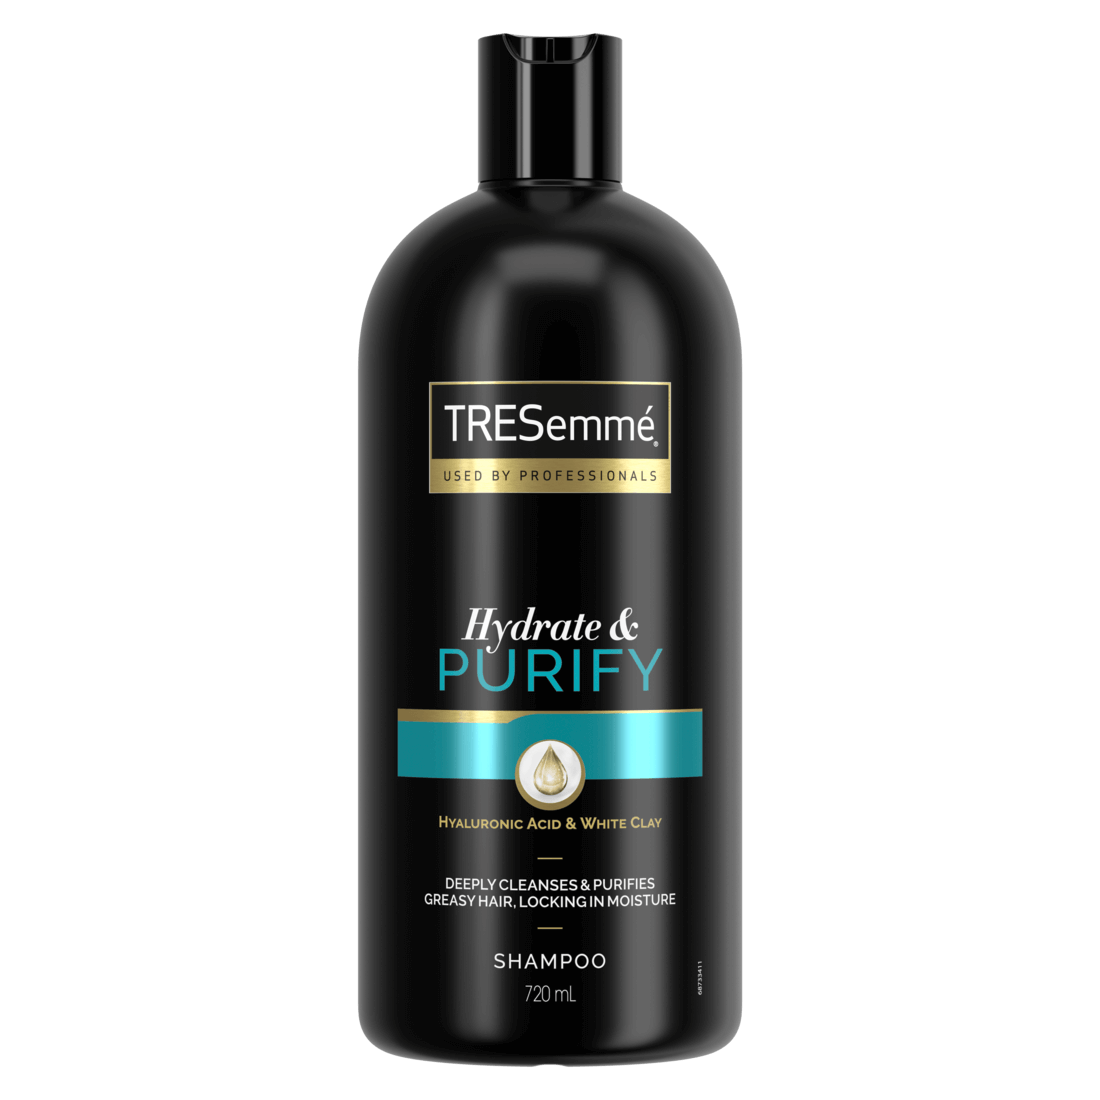 Hydrate & Purify Shampoo